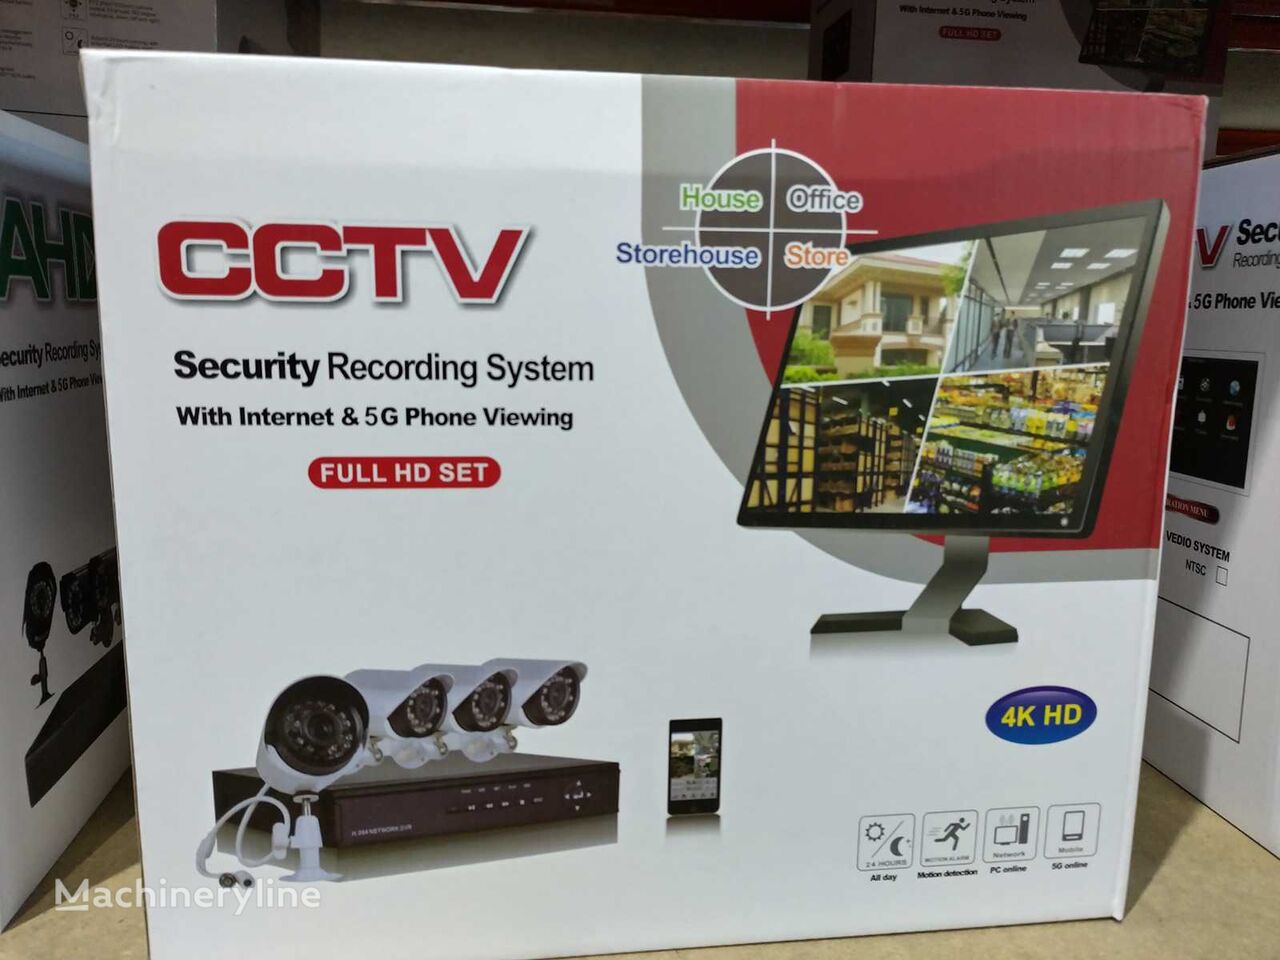 CCTV-4 industrija zabave